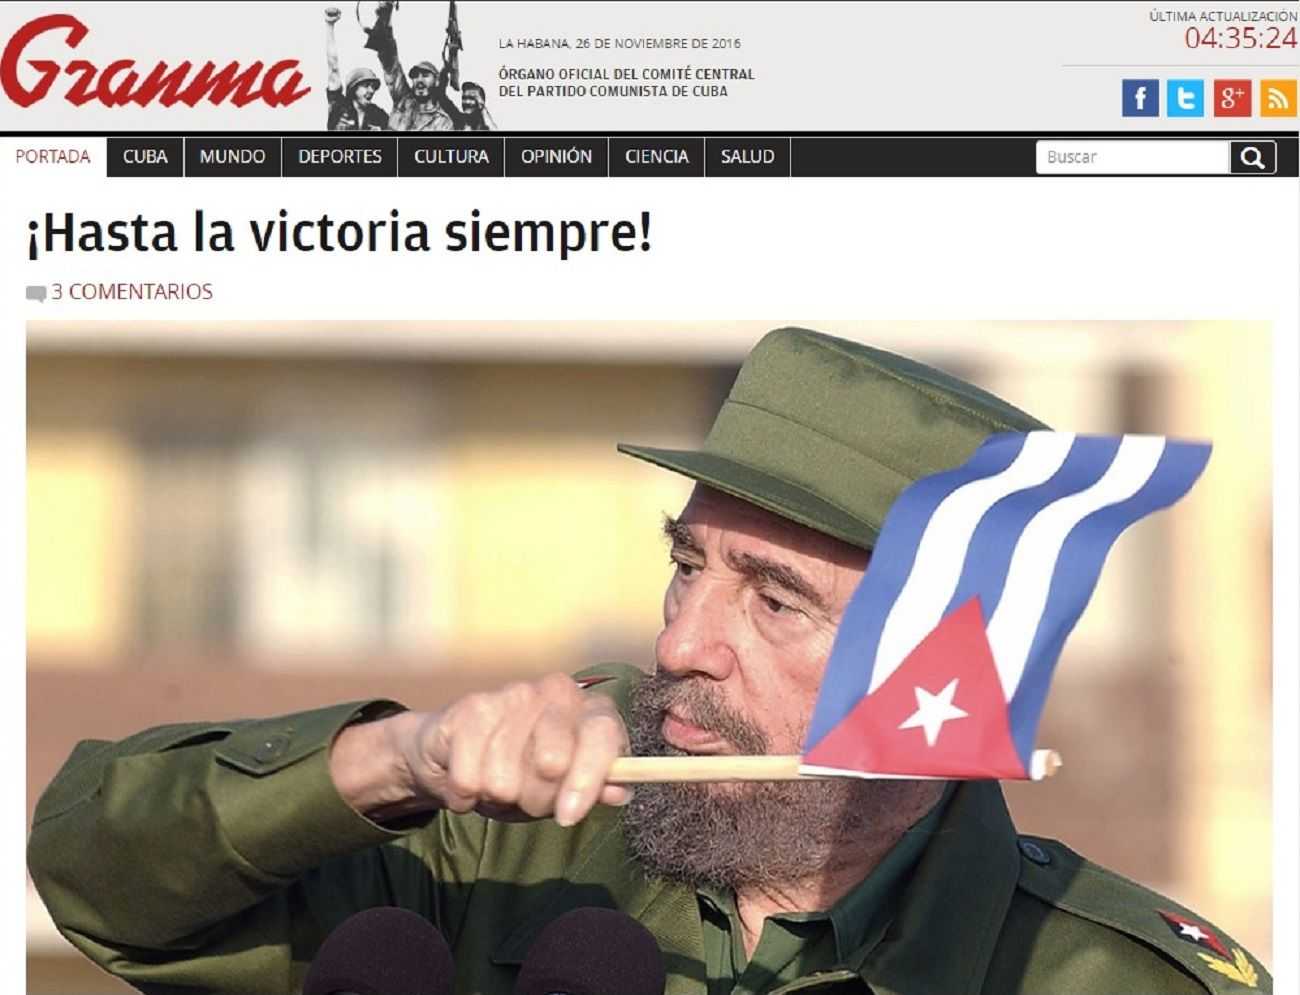 Les reaccions de la premsa de Cuba i Florida